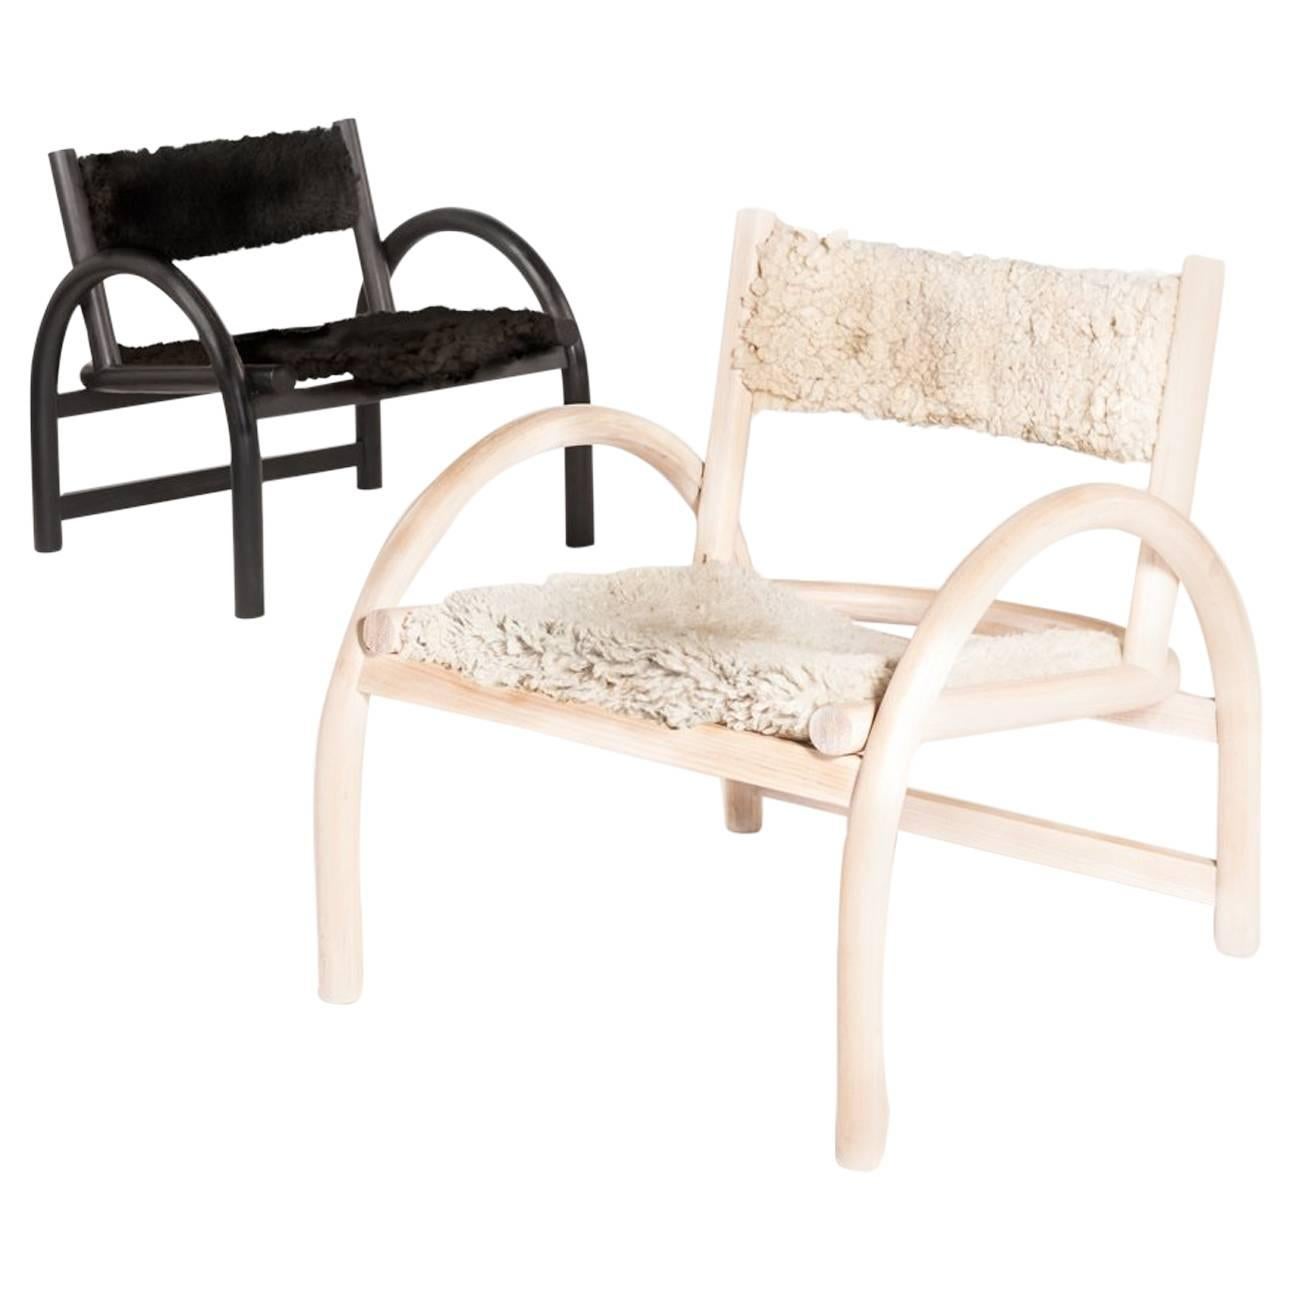 Der Shepherd's Chair, der erste Loungesessel von Hinterland, ist das Ergebnis jahrelanger Design- und Prototypenentwicklung. Inspiriert durch die enge Beziehung zwischen den Werkzeugen eines traditionellen Hirten, den Tieren und dem Land. Die Kurve